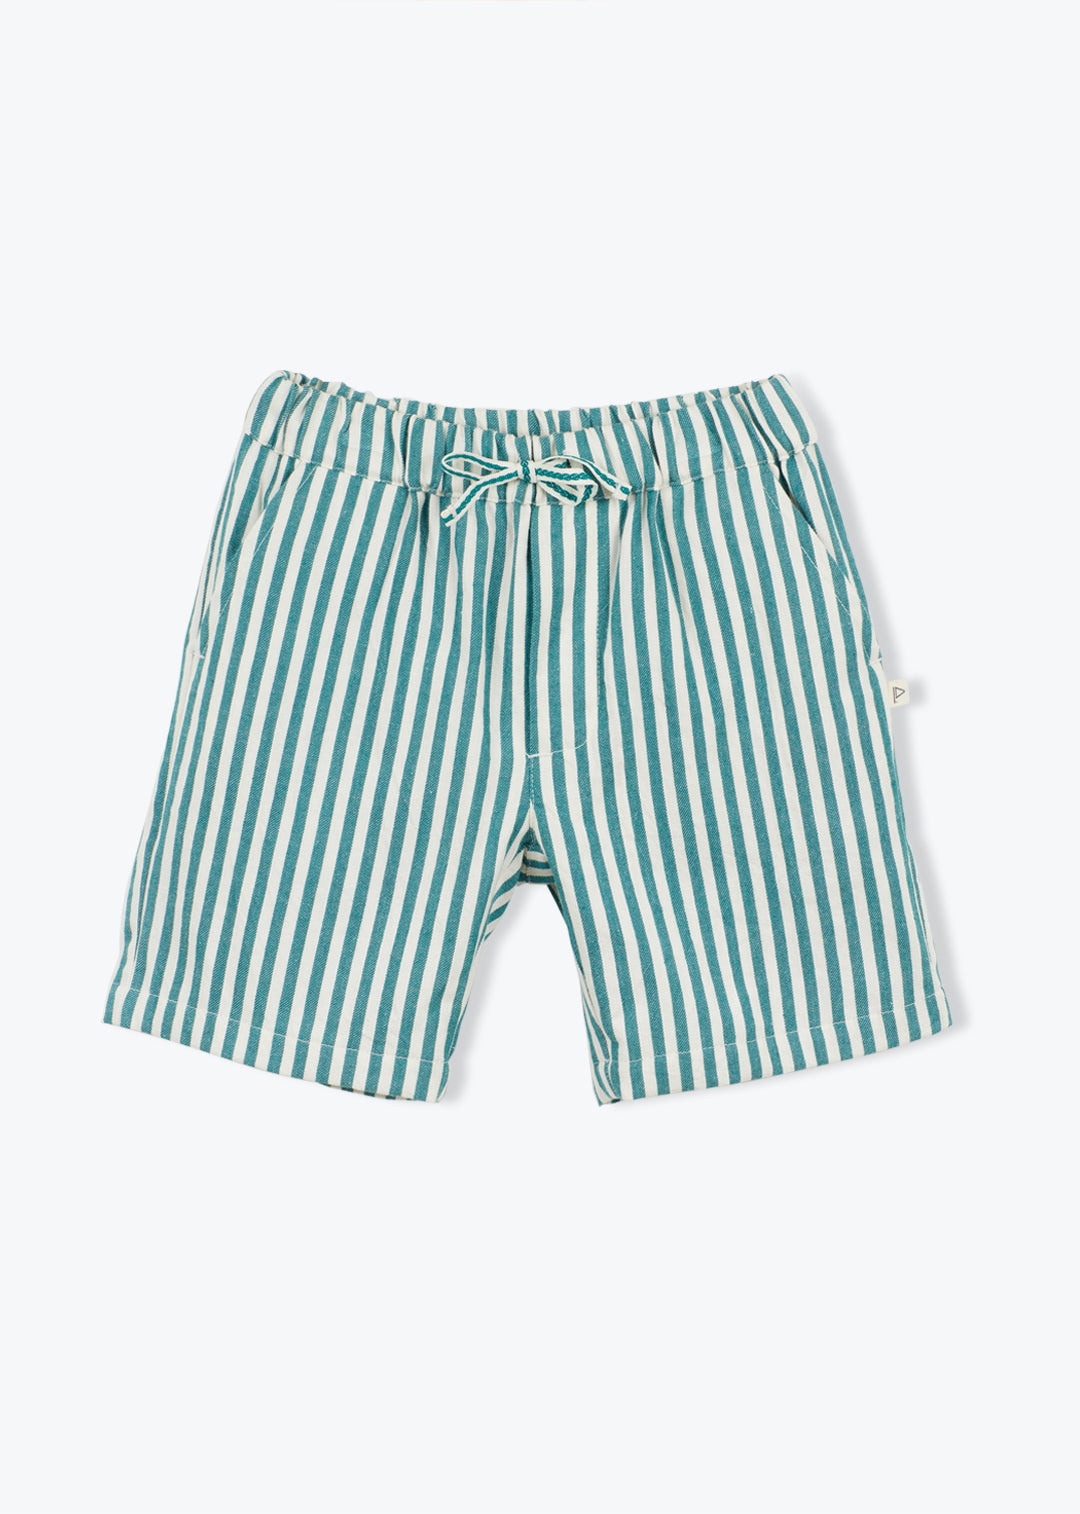 Shorts Boy Denim Stripe Green Franck - قميص